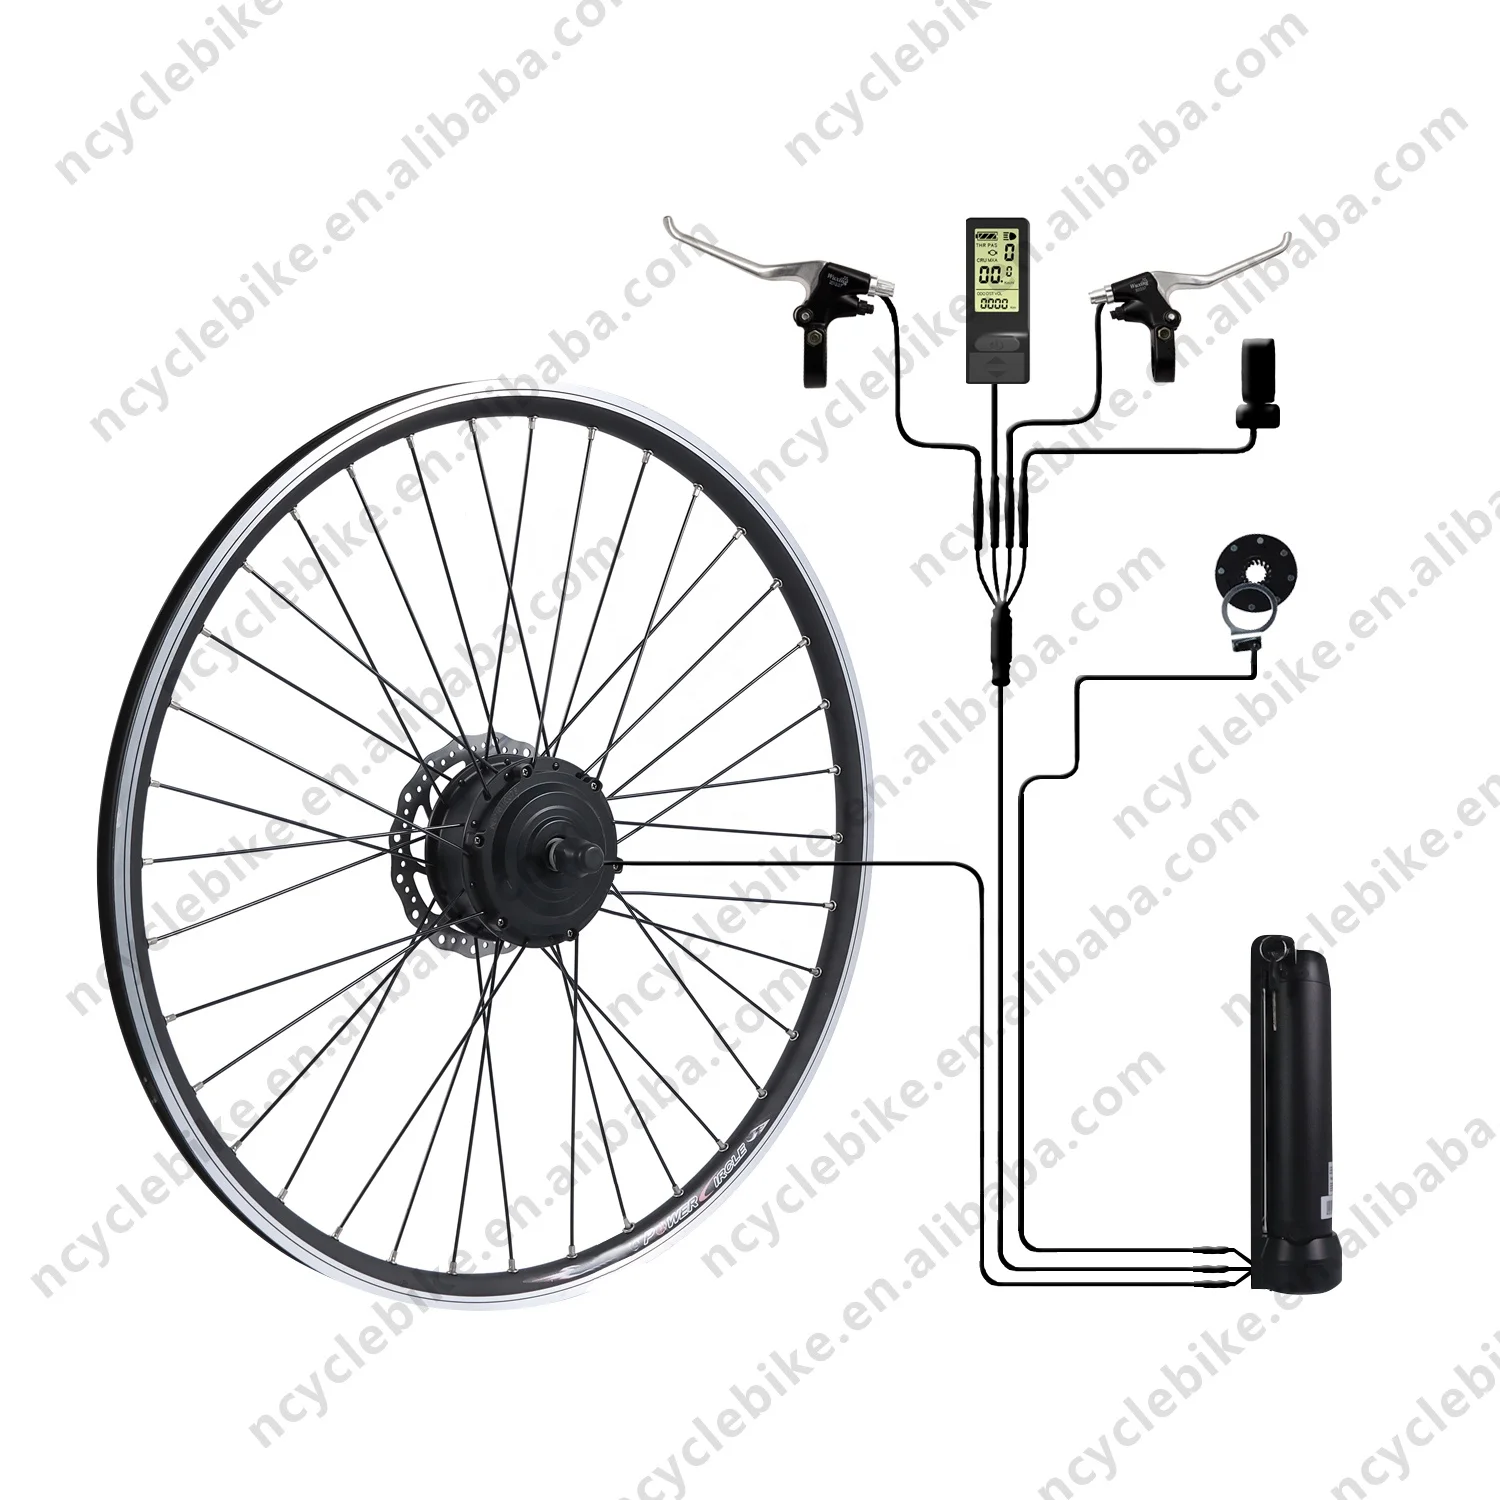 

Kit de bicicleta electrica ebike electric bicycle conversion kit 250w cheap sell, Black+silver